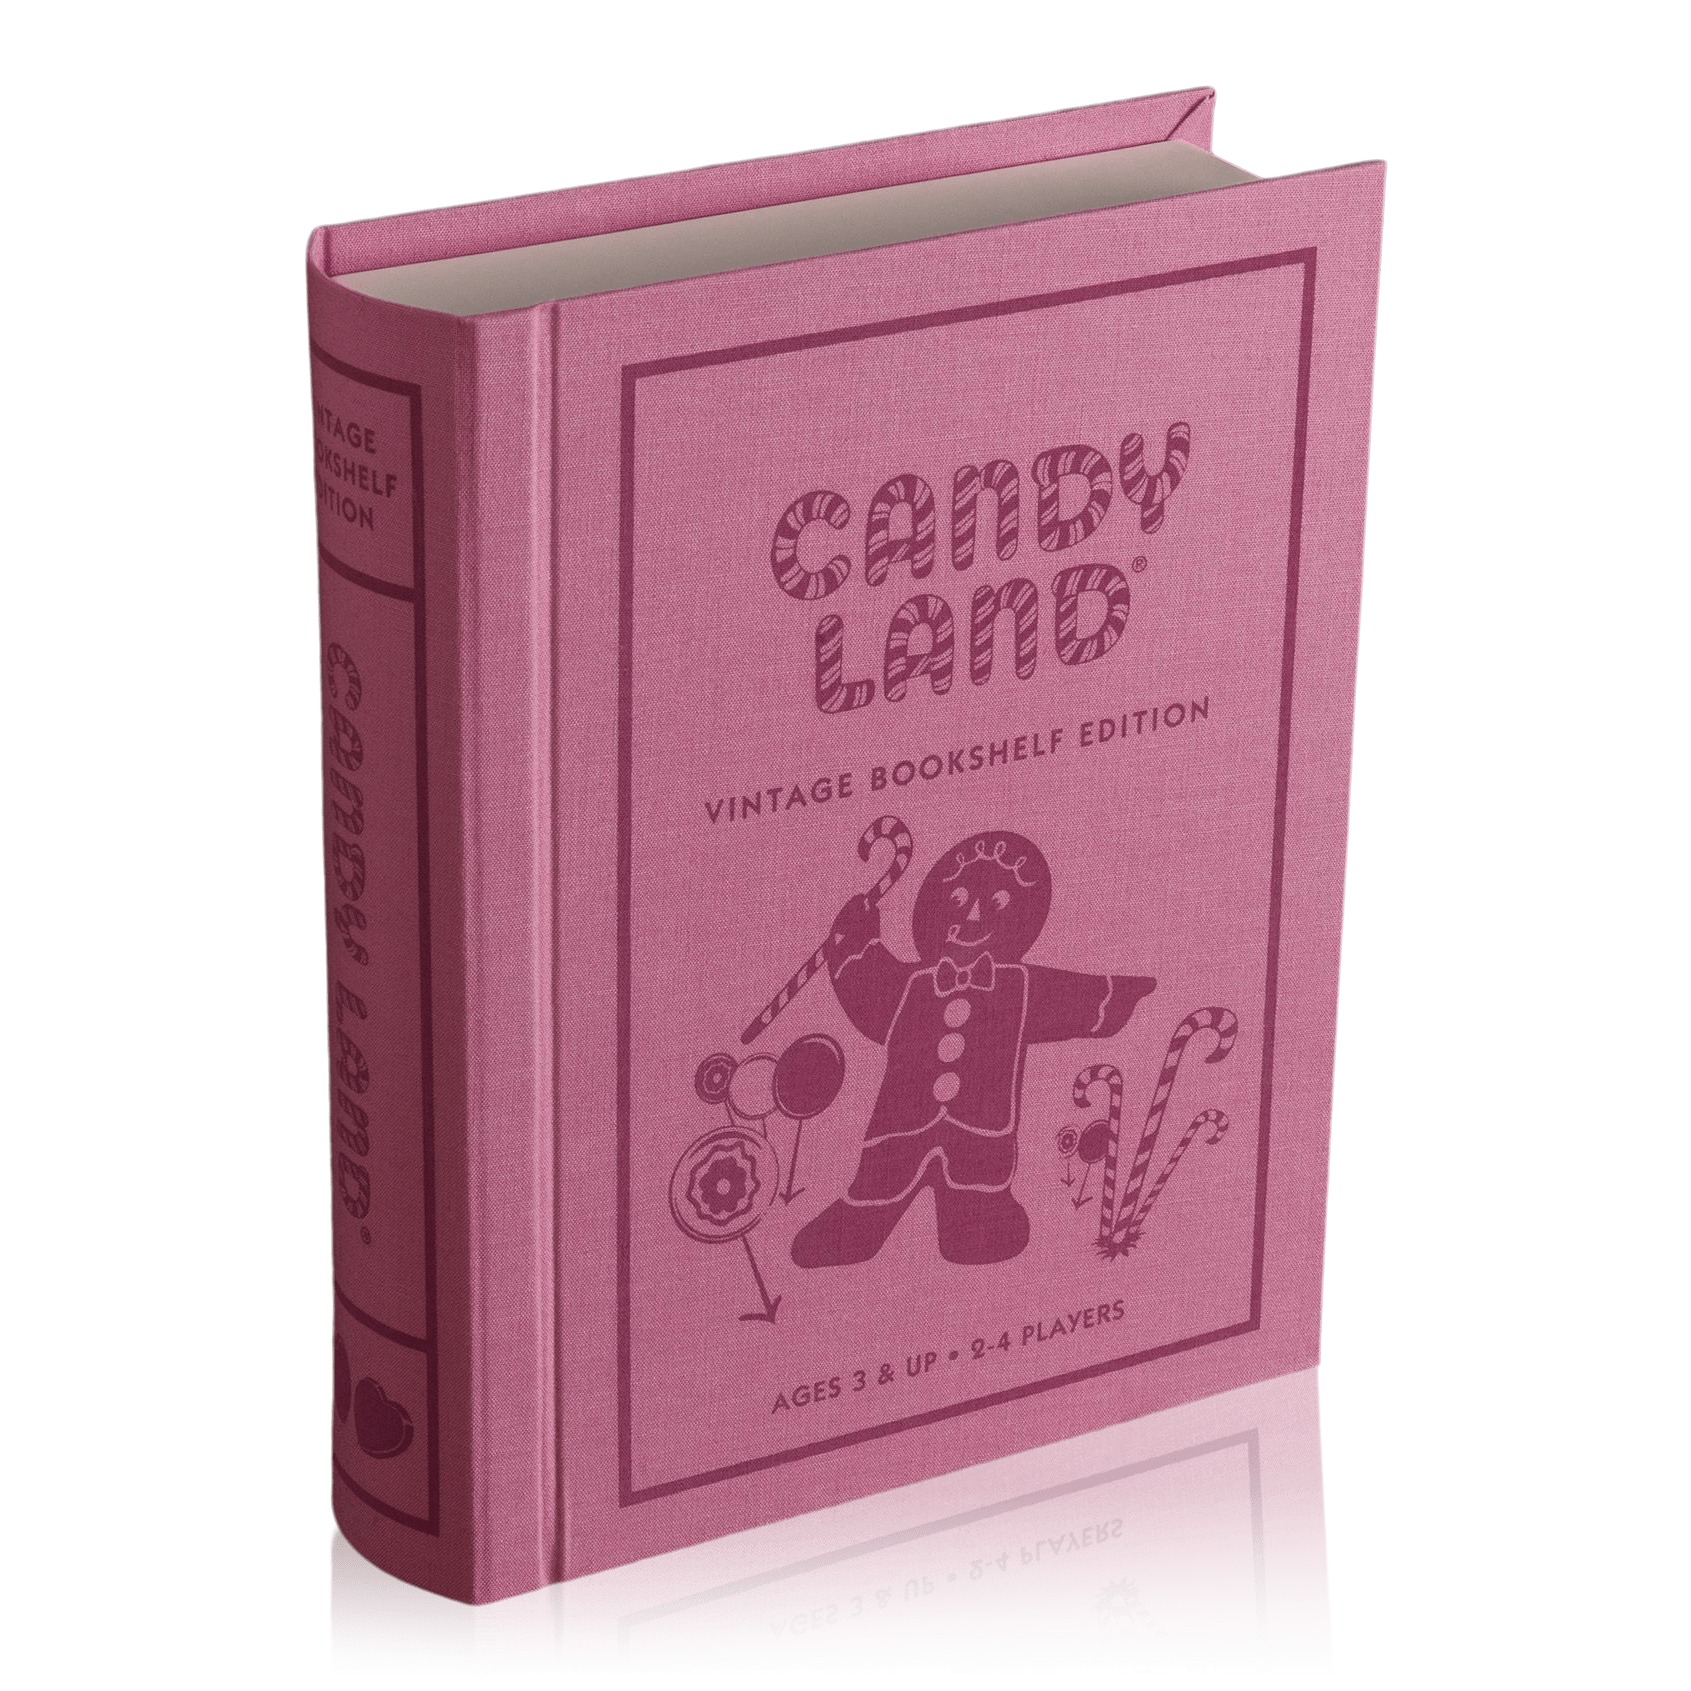 Candyland Vintage Bookshelf Edition